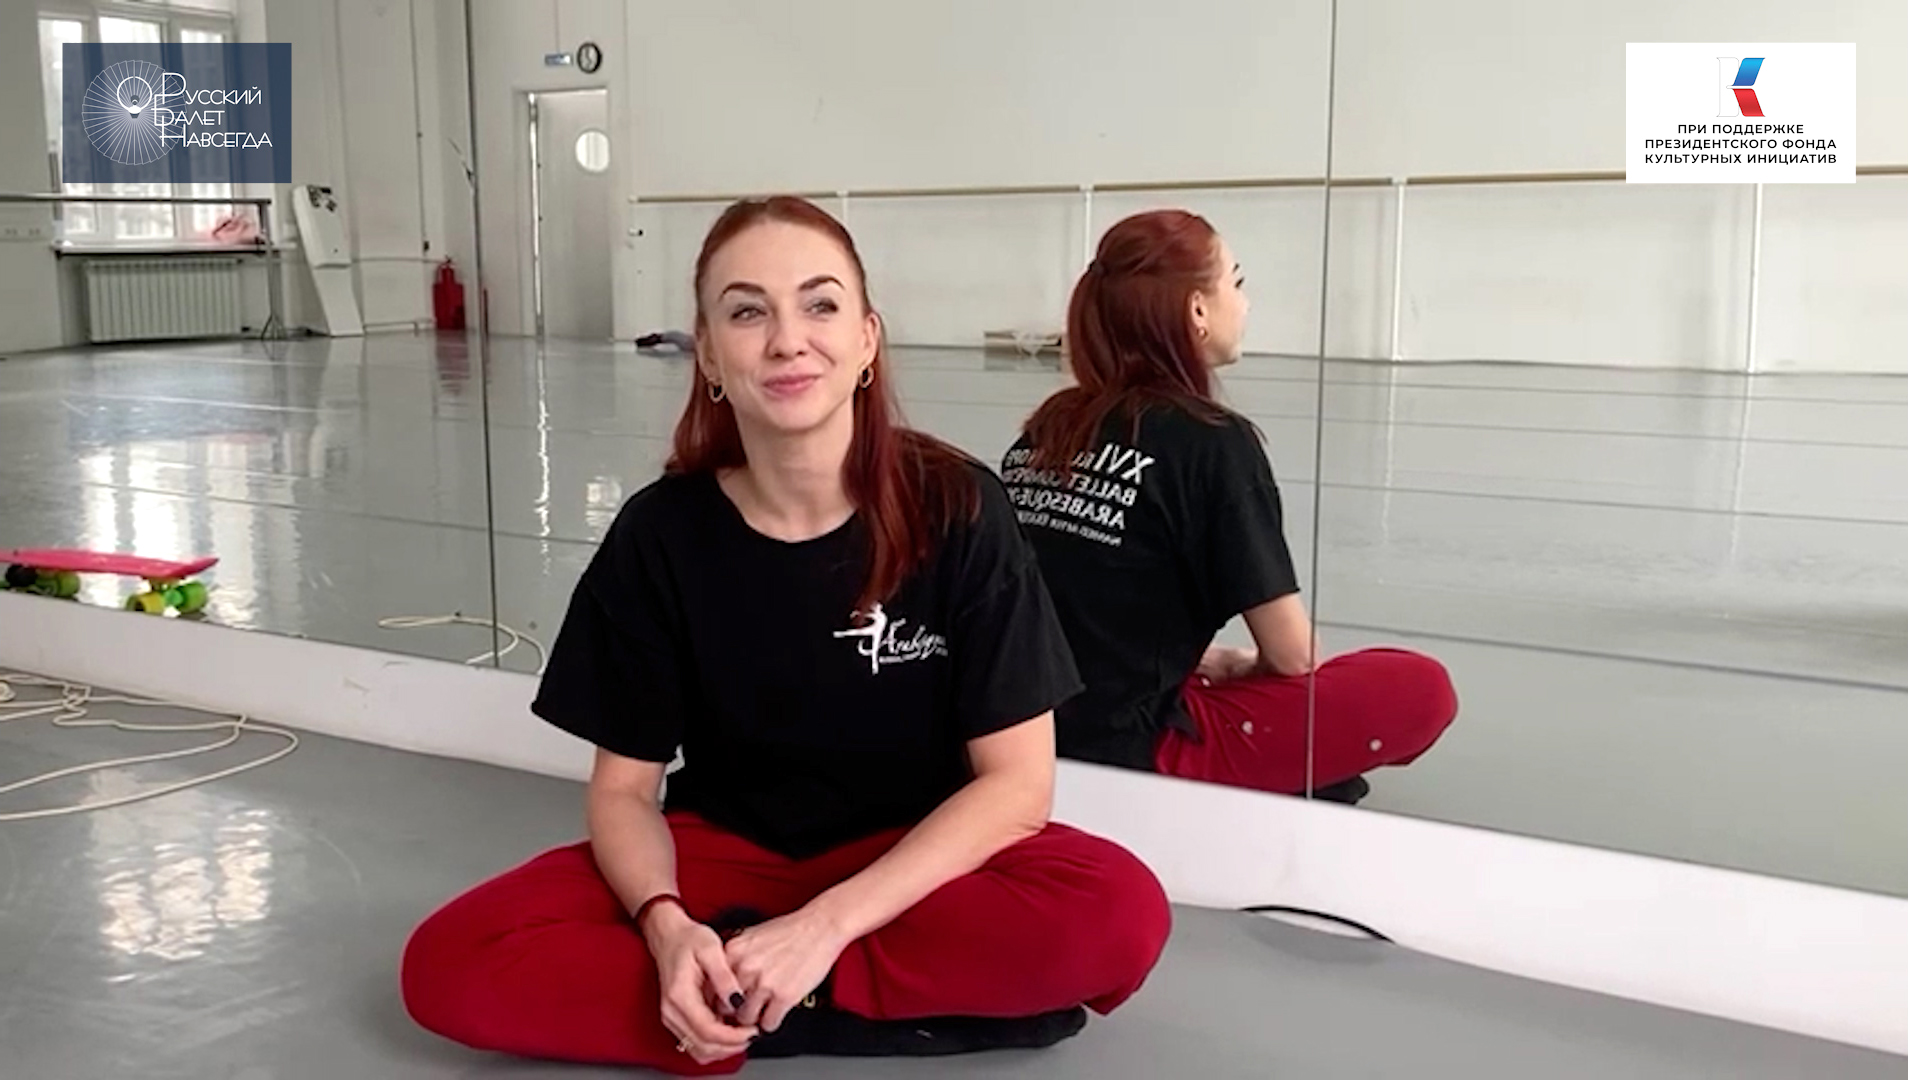 Лилия Симонова — участница мастерской молодых хореографов в проекте «Русский балет навсегда».